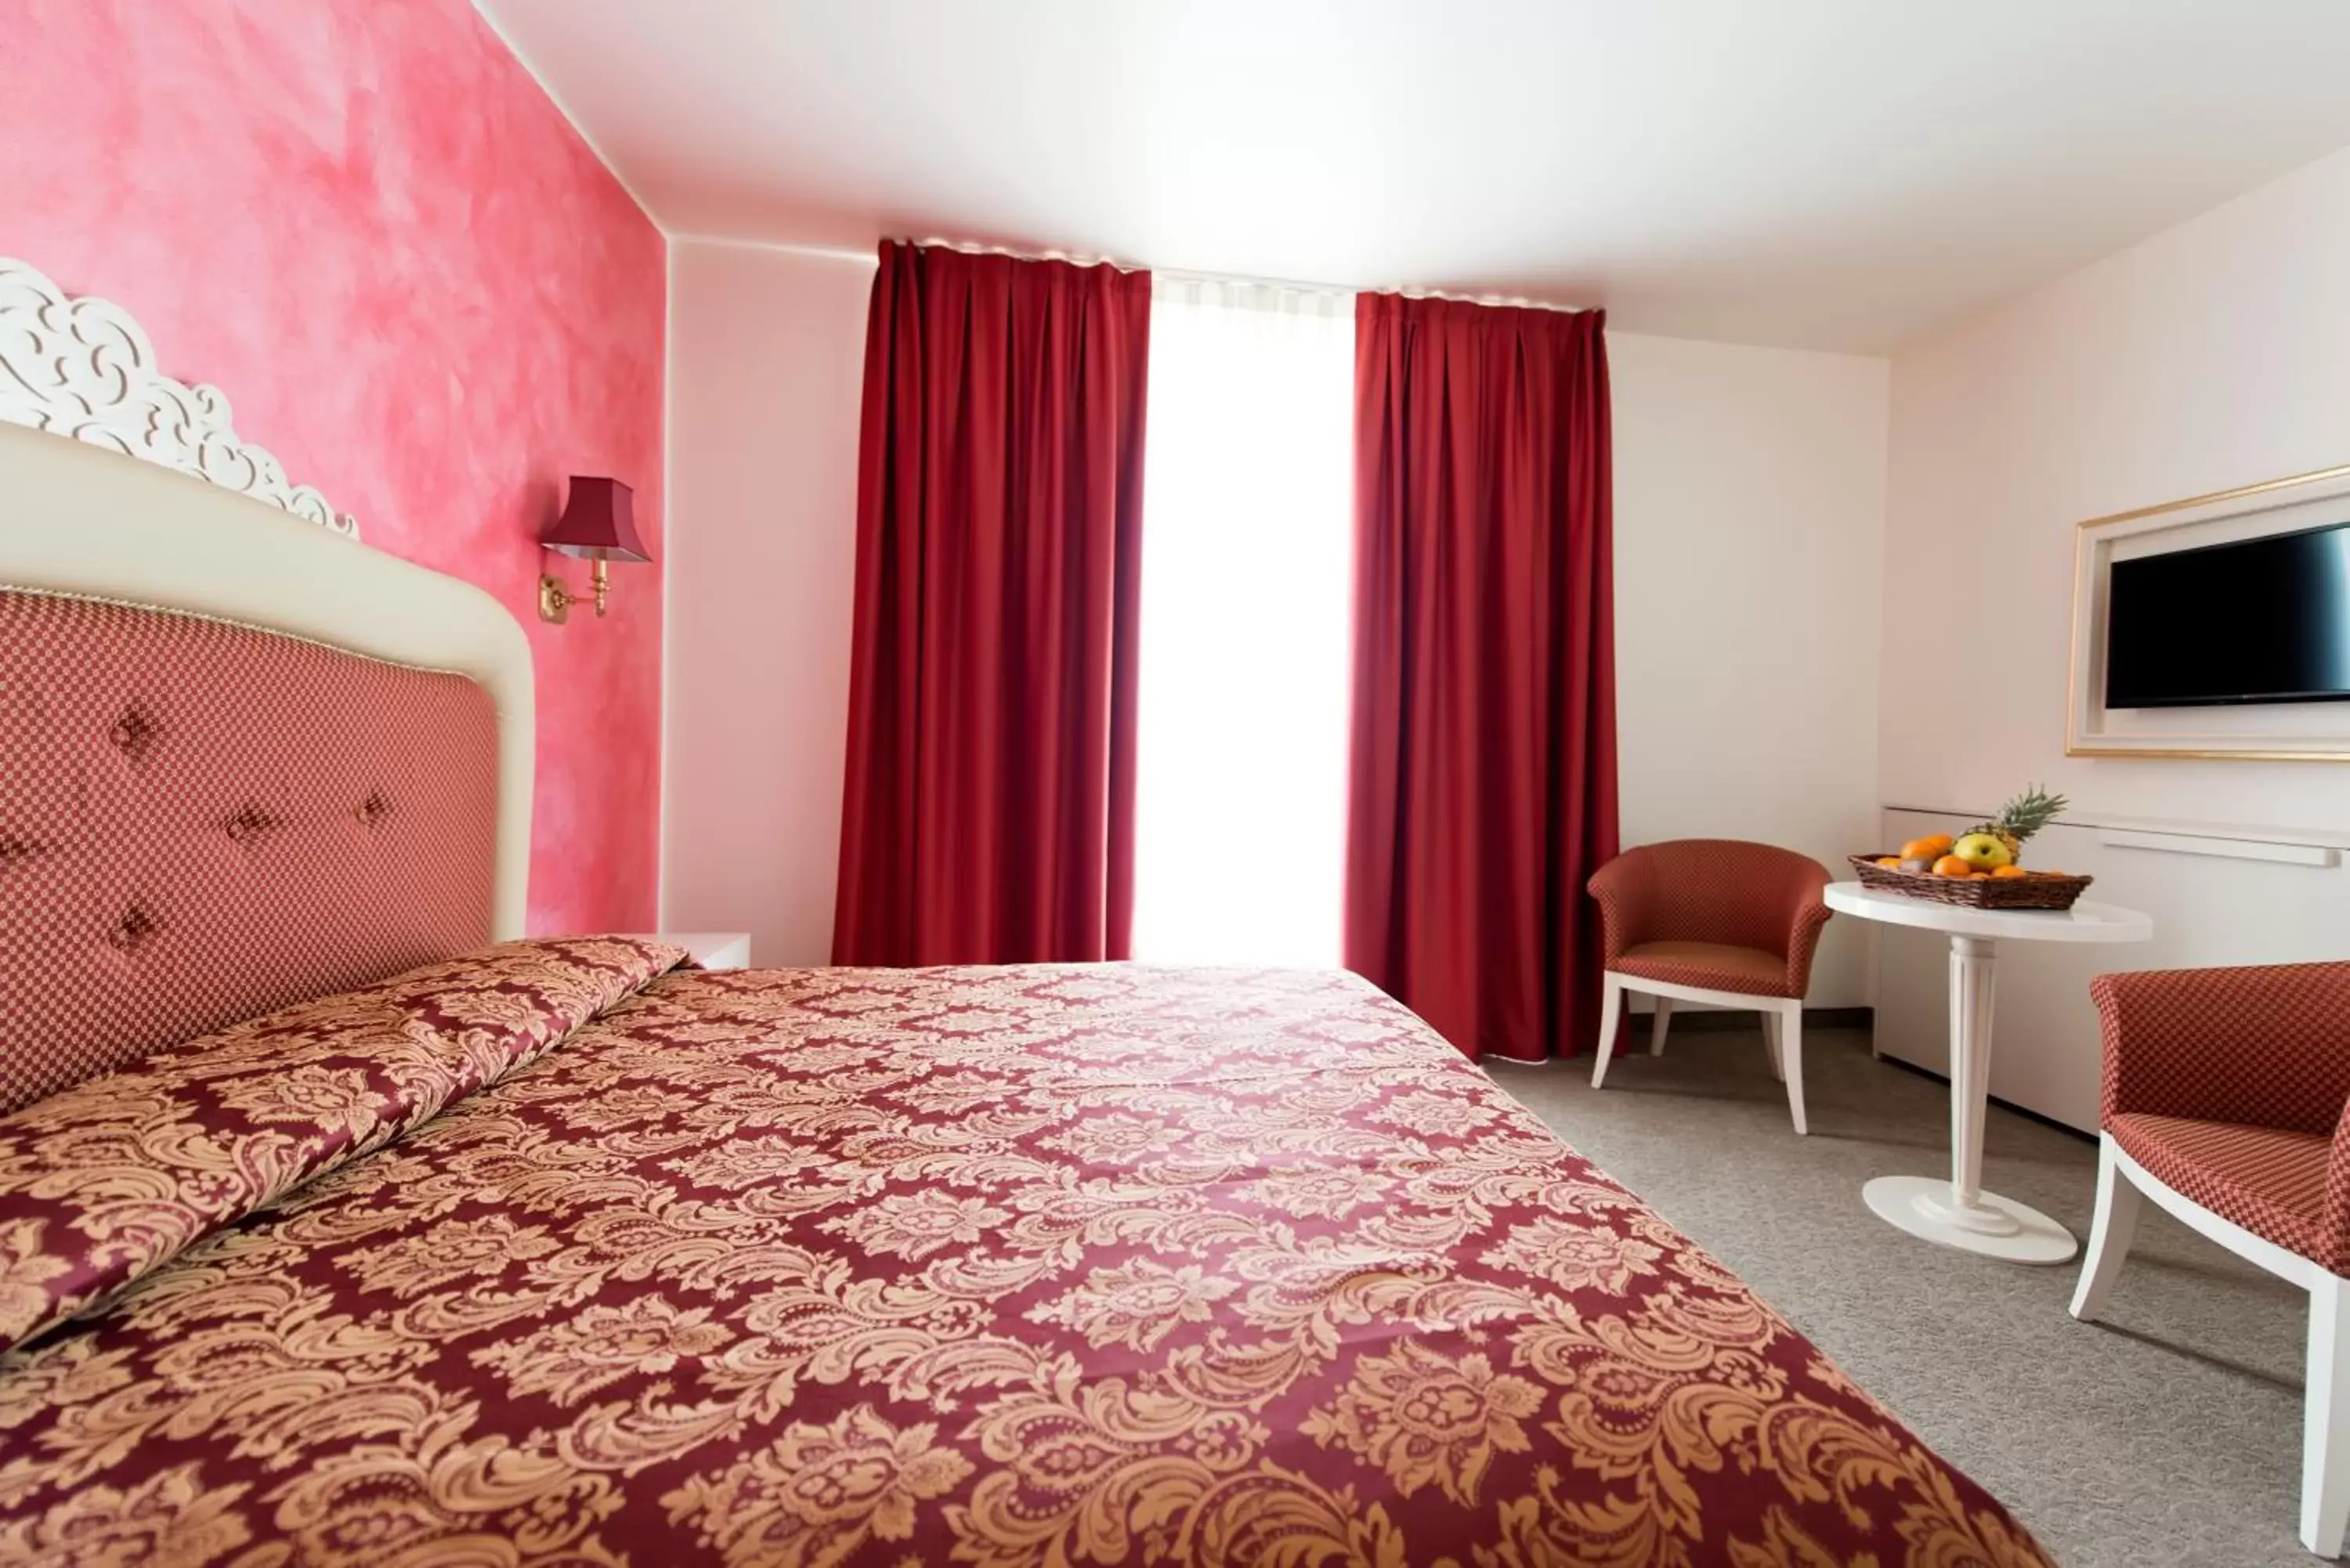 Bed in Palace Hotel "La CONCHIGLIA D' ORO"